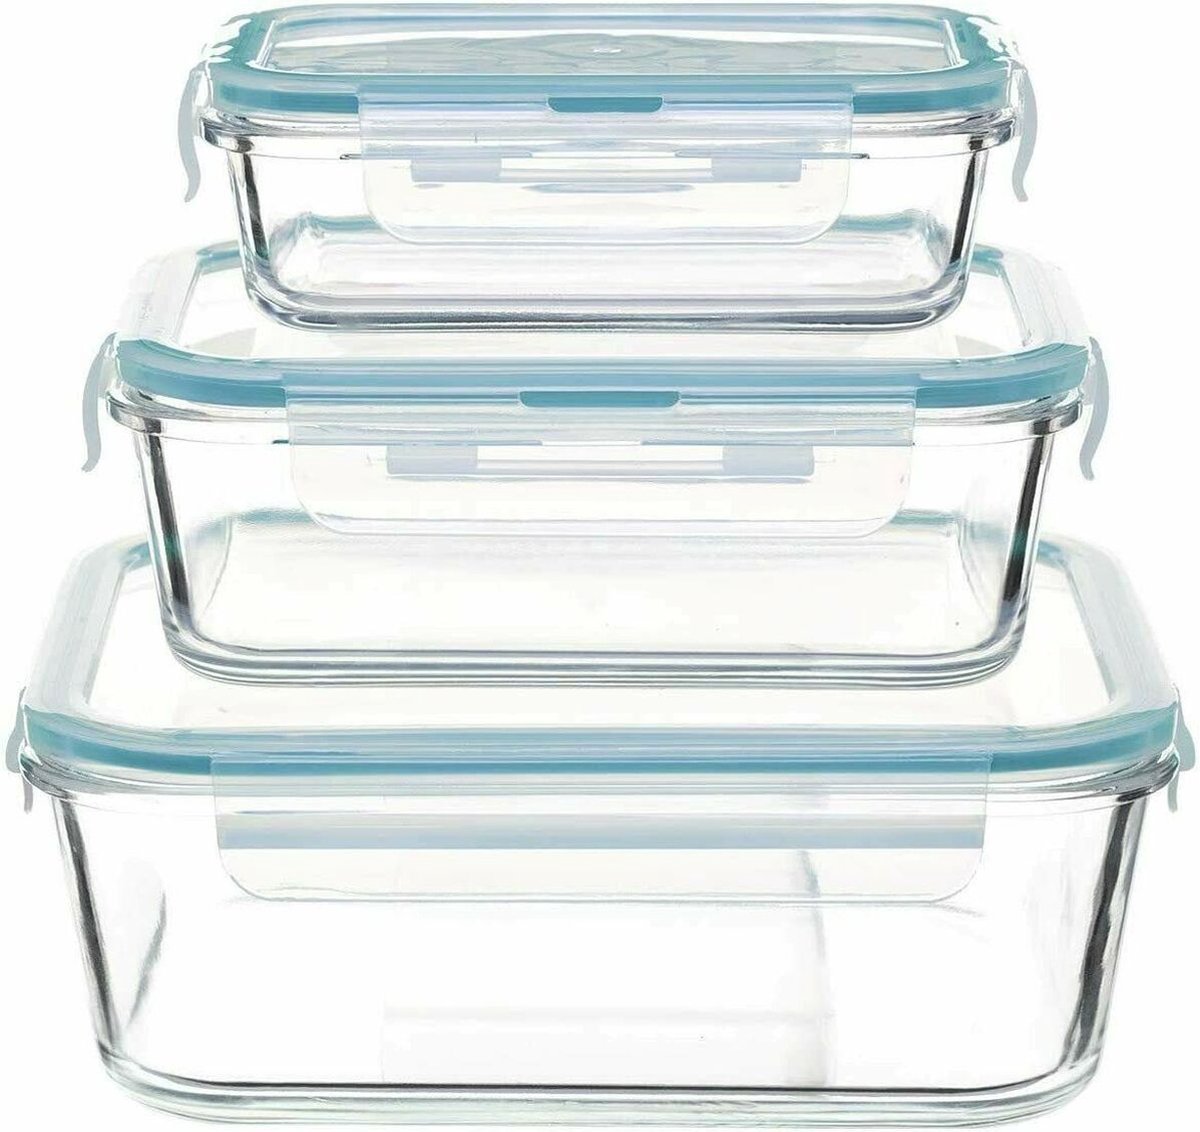 Termolex glazen vershoudbakjes - Meal prep bakjes - Lunchbox - Diepvriesbakjes - Ovenbestendig - 3 stuks - 630 ml + 1000 ml + 1480 ml